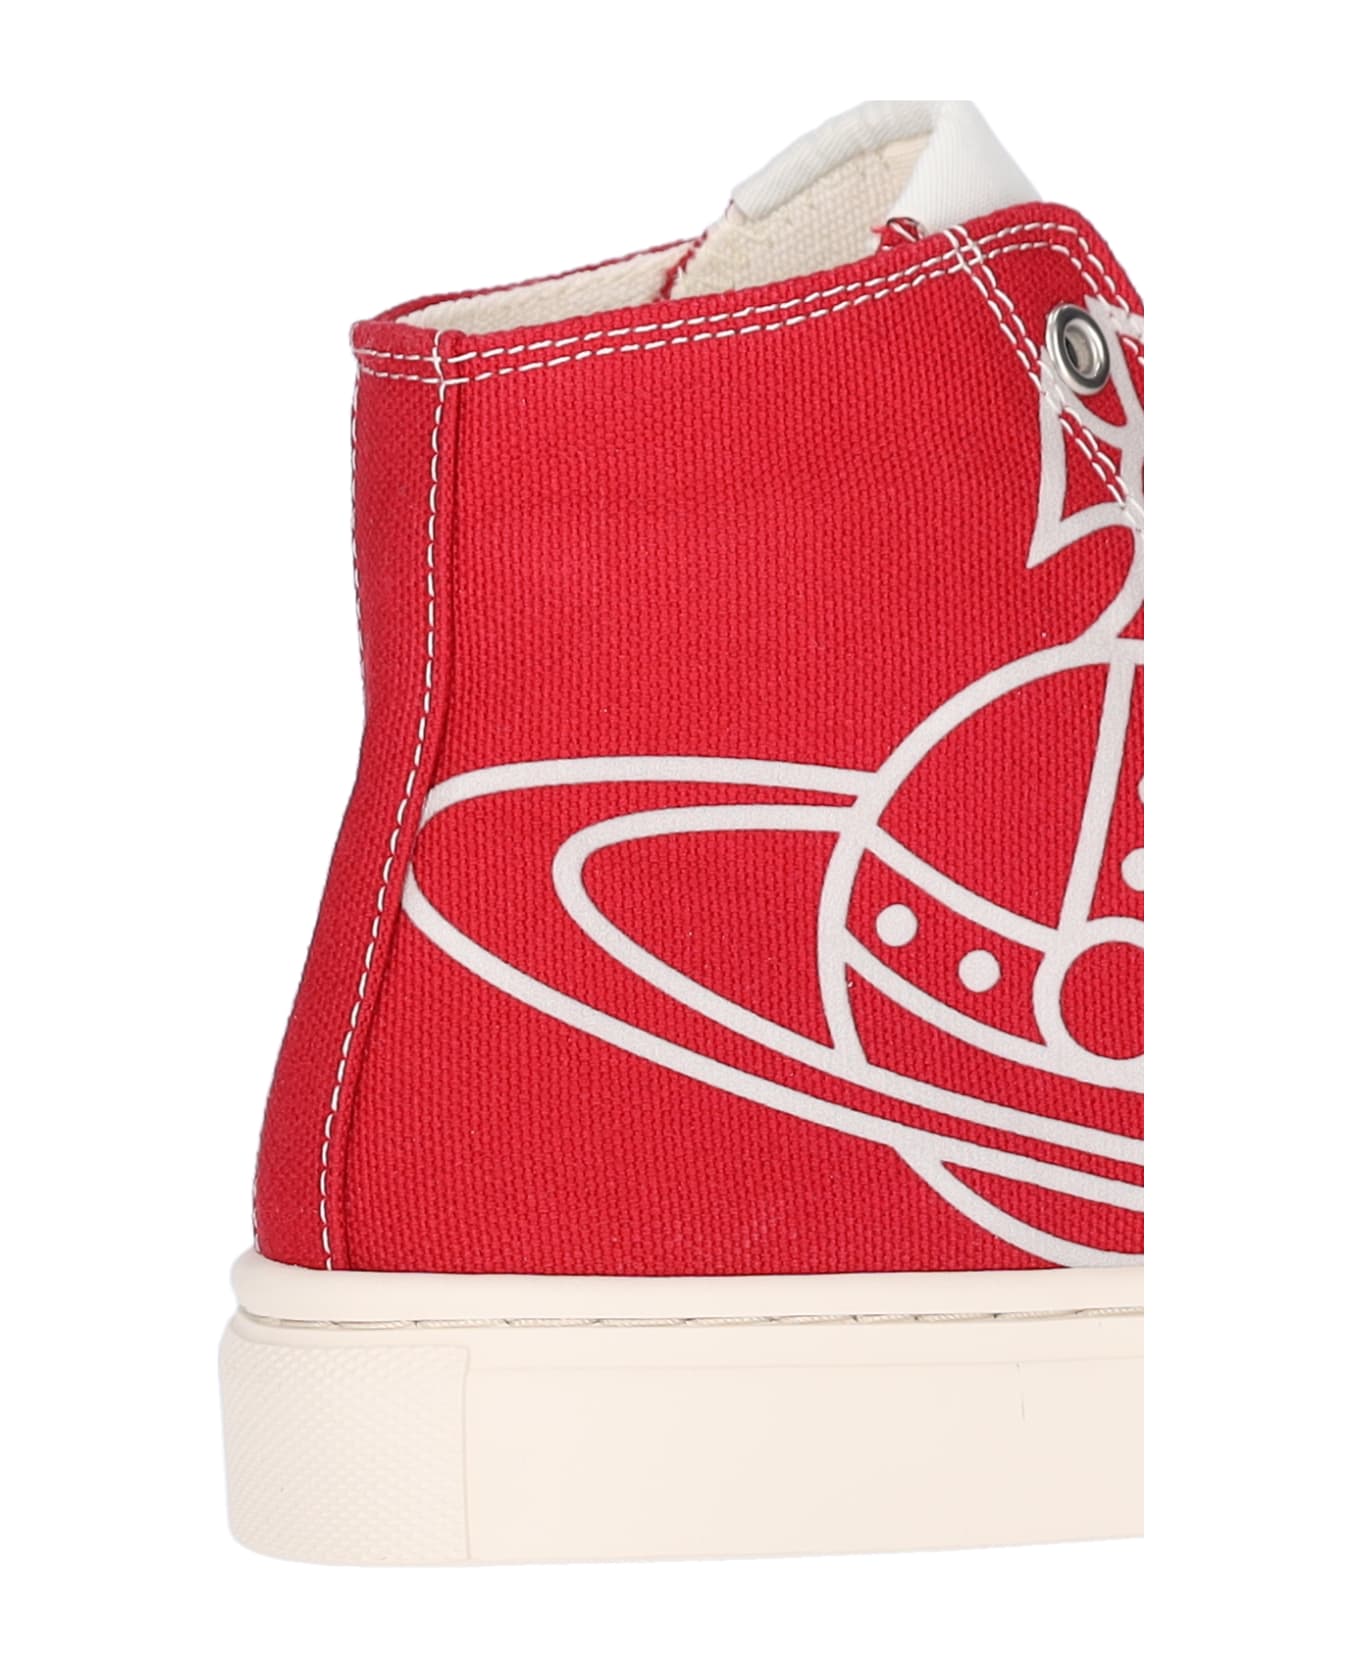 Vivienne Westwood "plimsoll High" Sneakers - Red